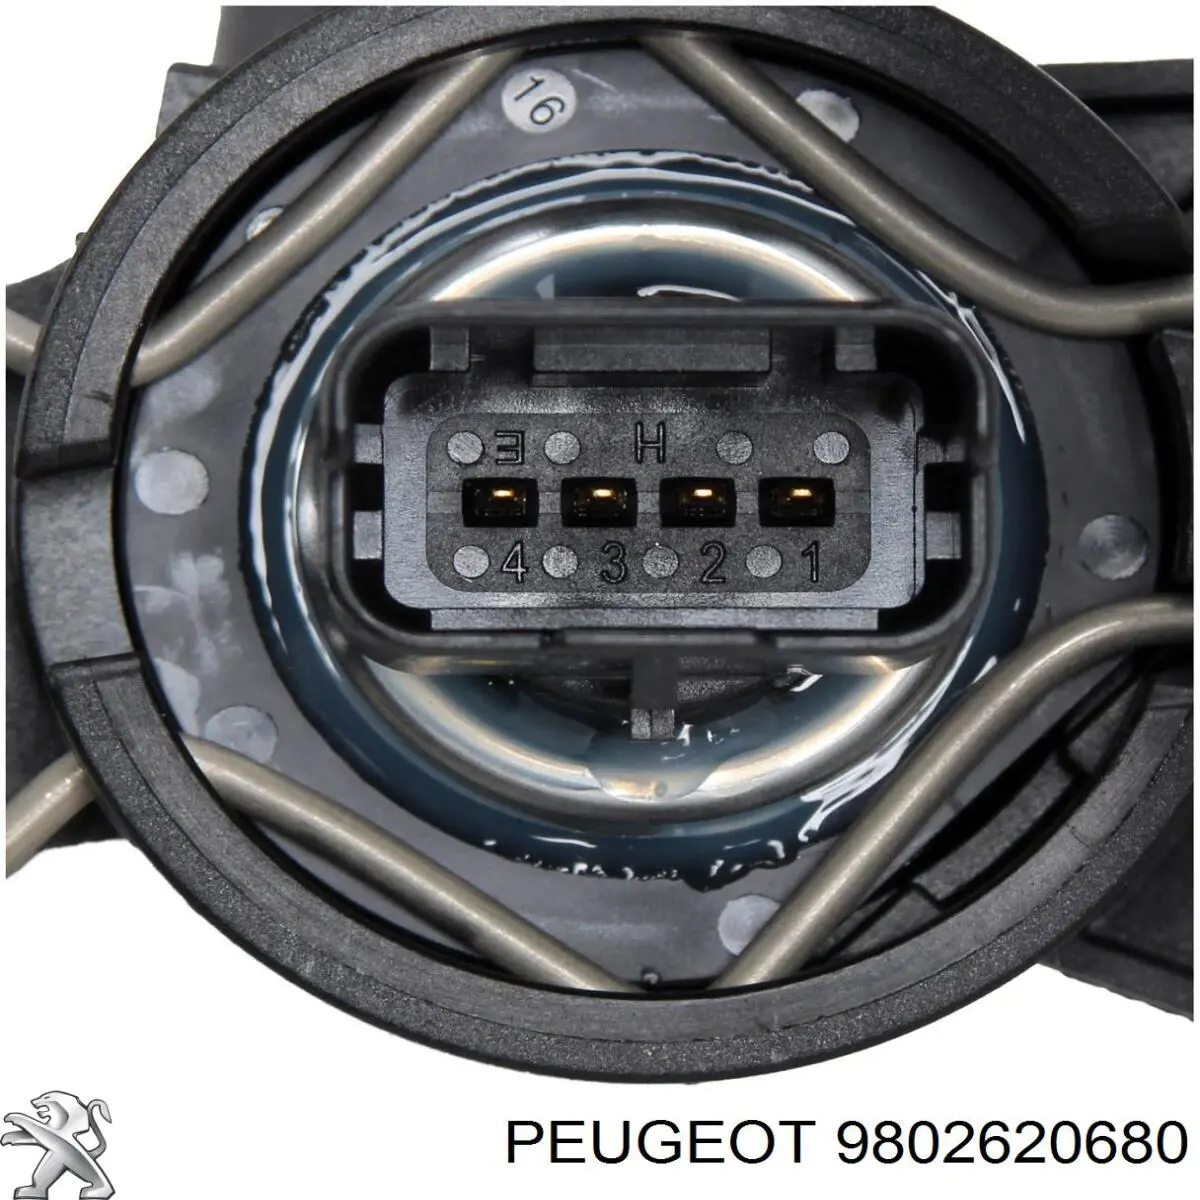 9802620680 Peugeot/Citroen sensor de pressão de combustível